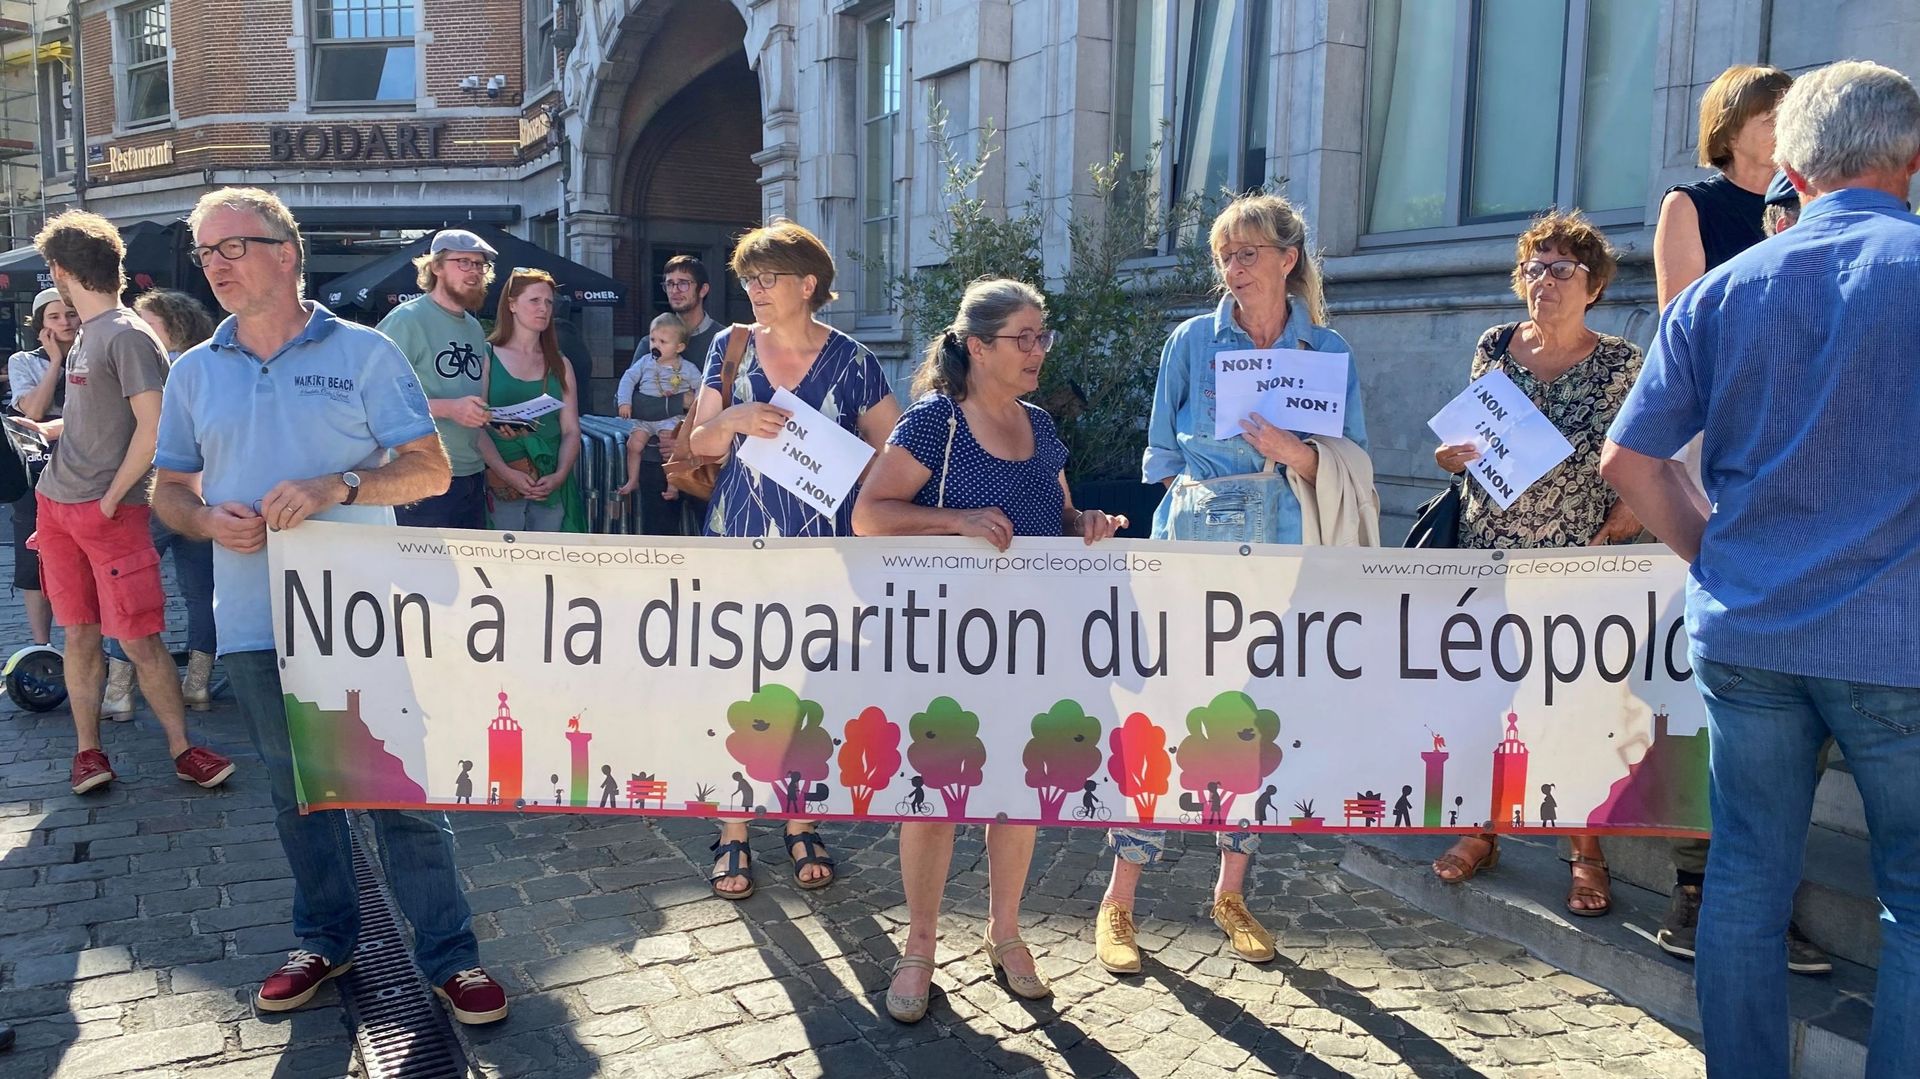 Des opposants au projet de réaménagement du square Léopold rassemblés devant la Bourse (Namur) où se tenait la réunion d'information préalable